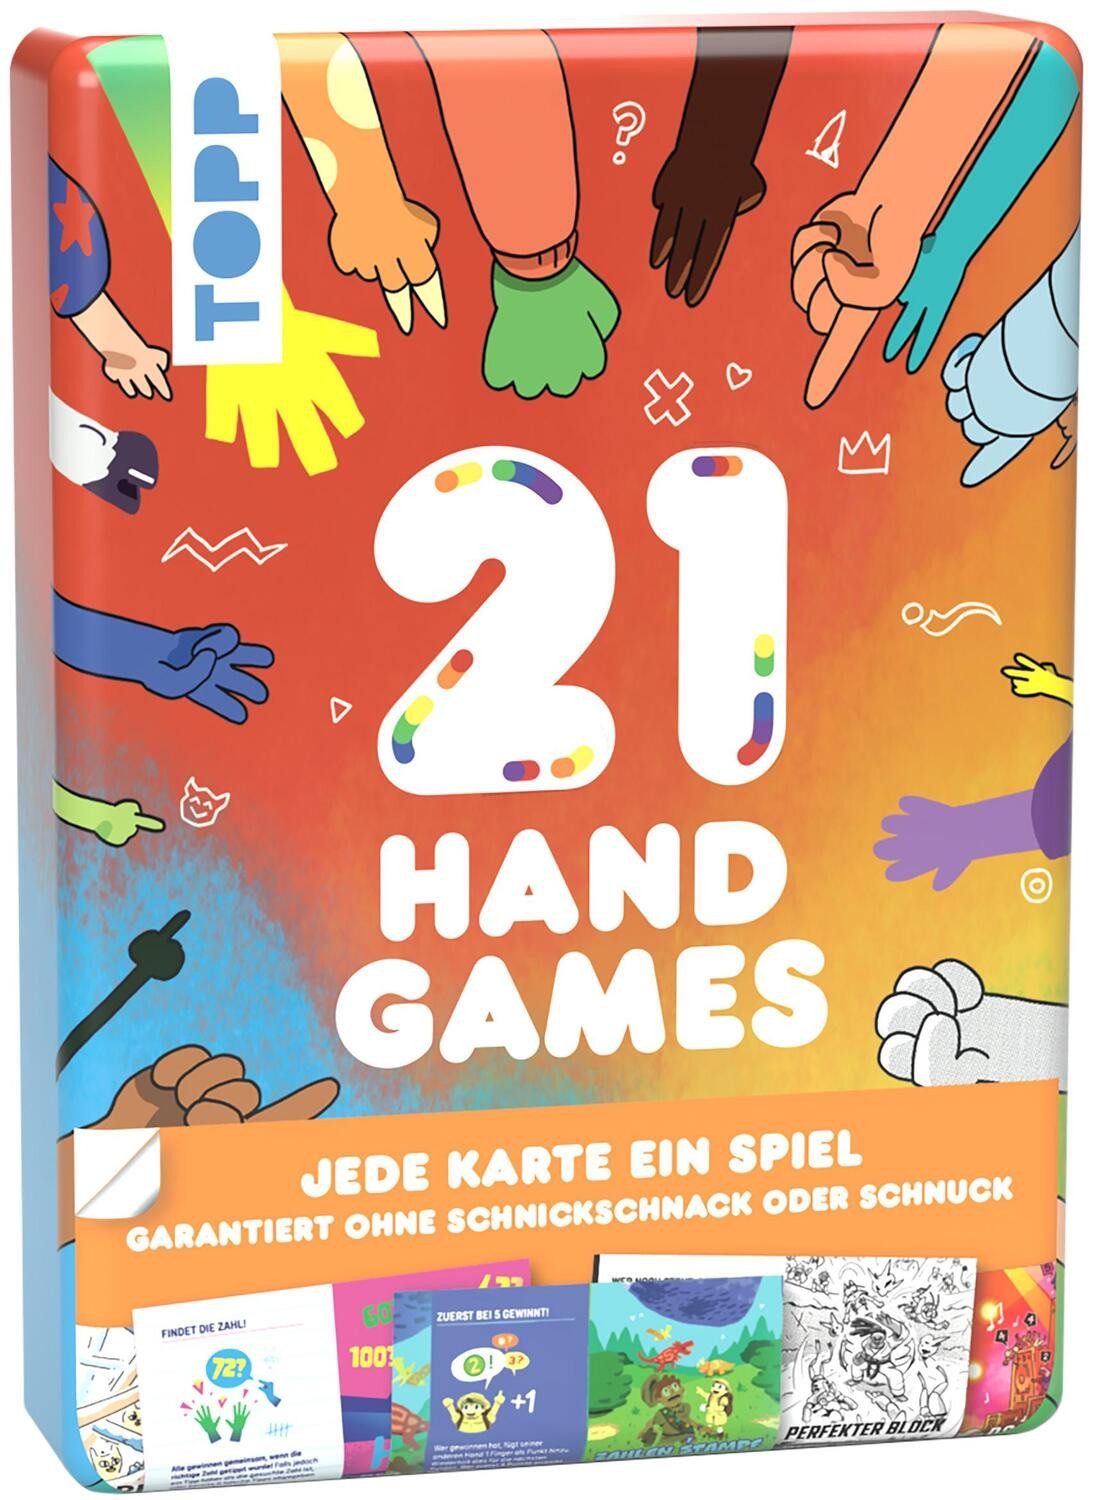 Frech Verlag Spiel, 21 Hand Games - Garantiert ohne Schnickschnack oder Schnuck!